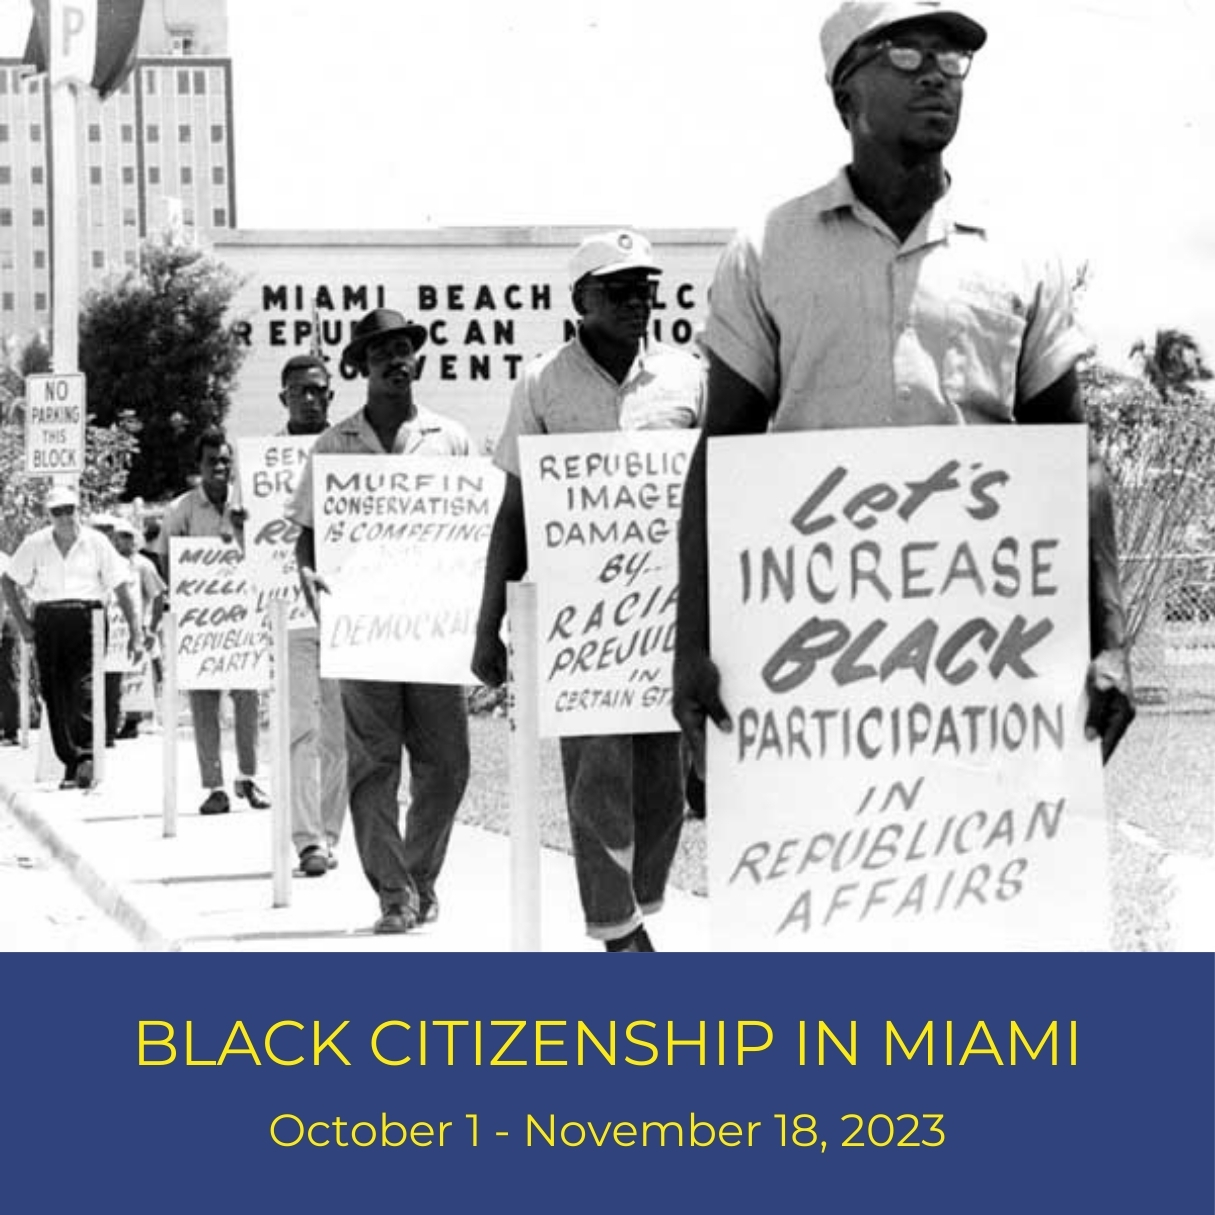 Black Citizenship in Miami title card